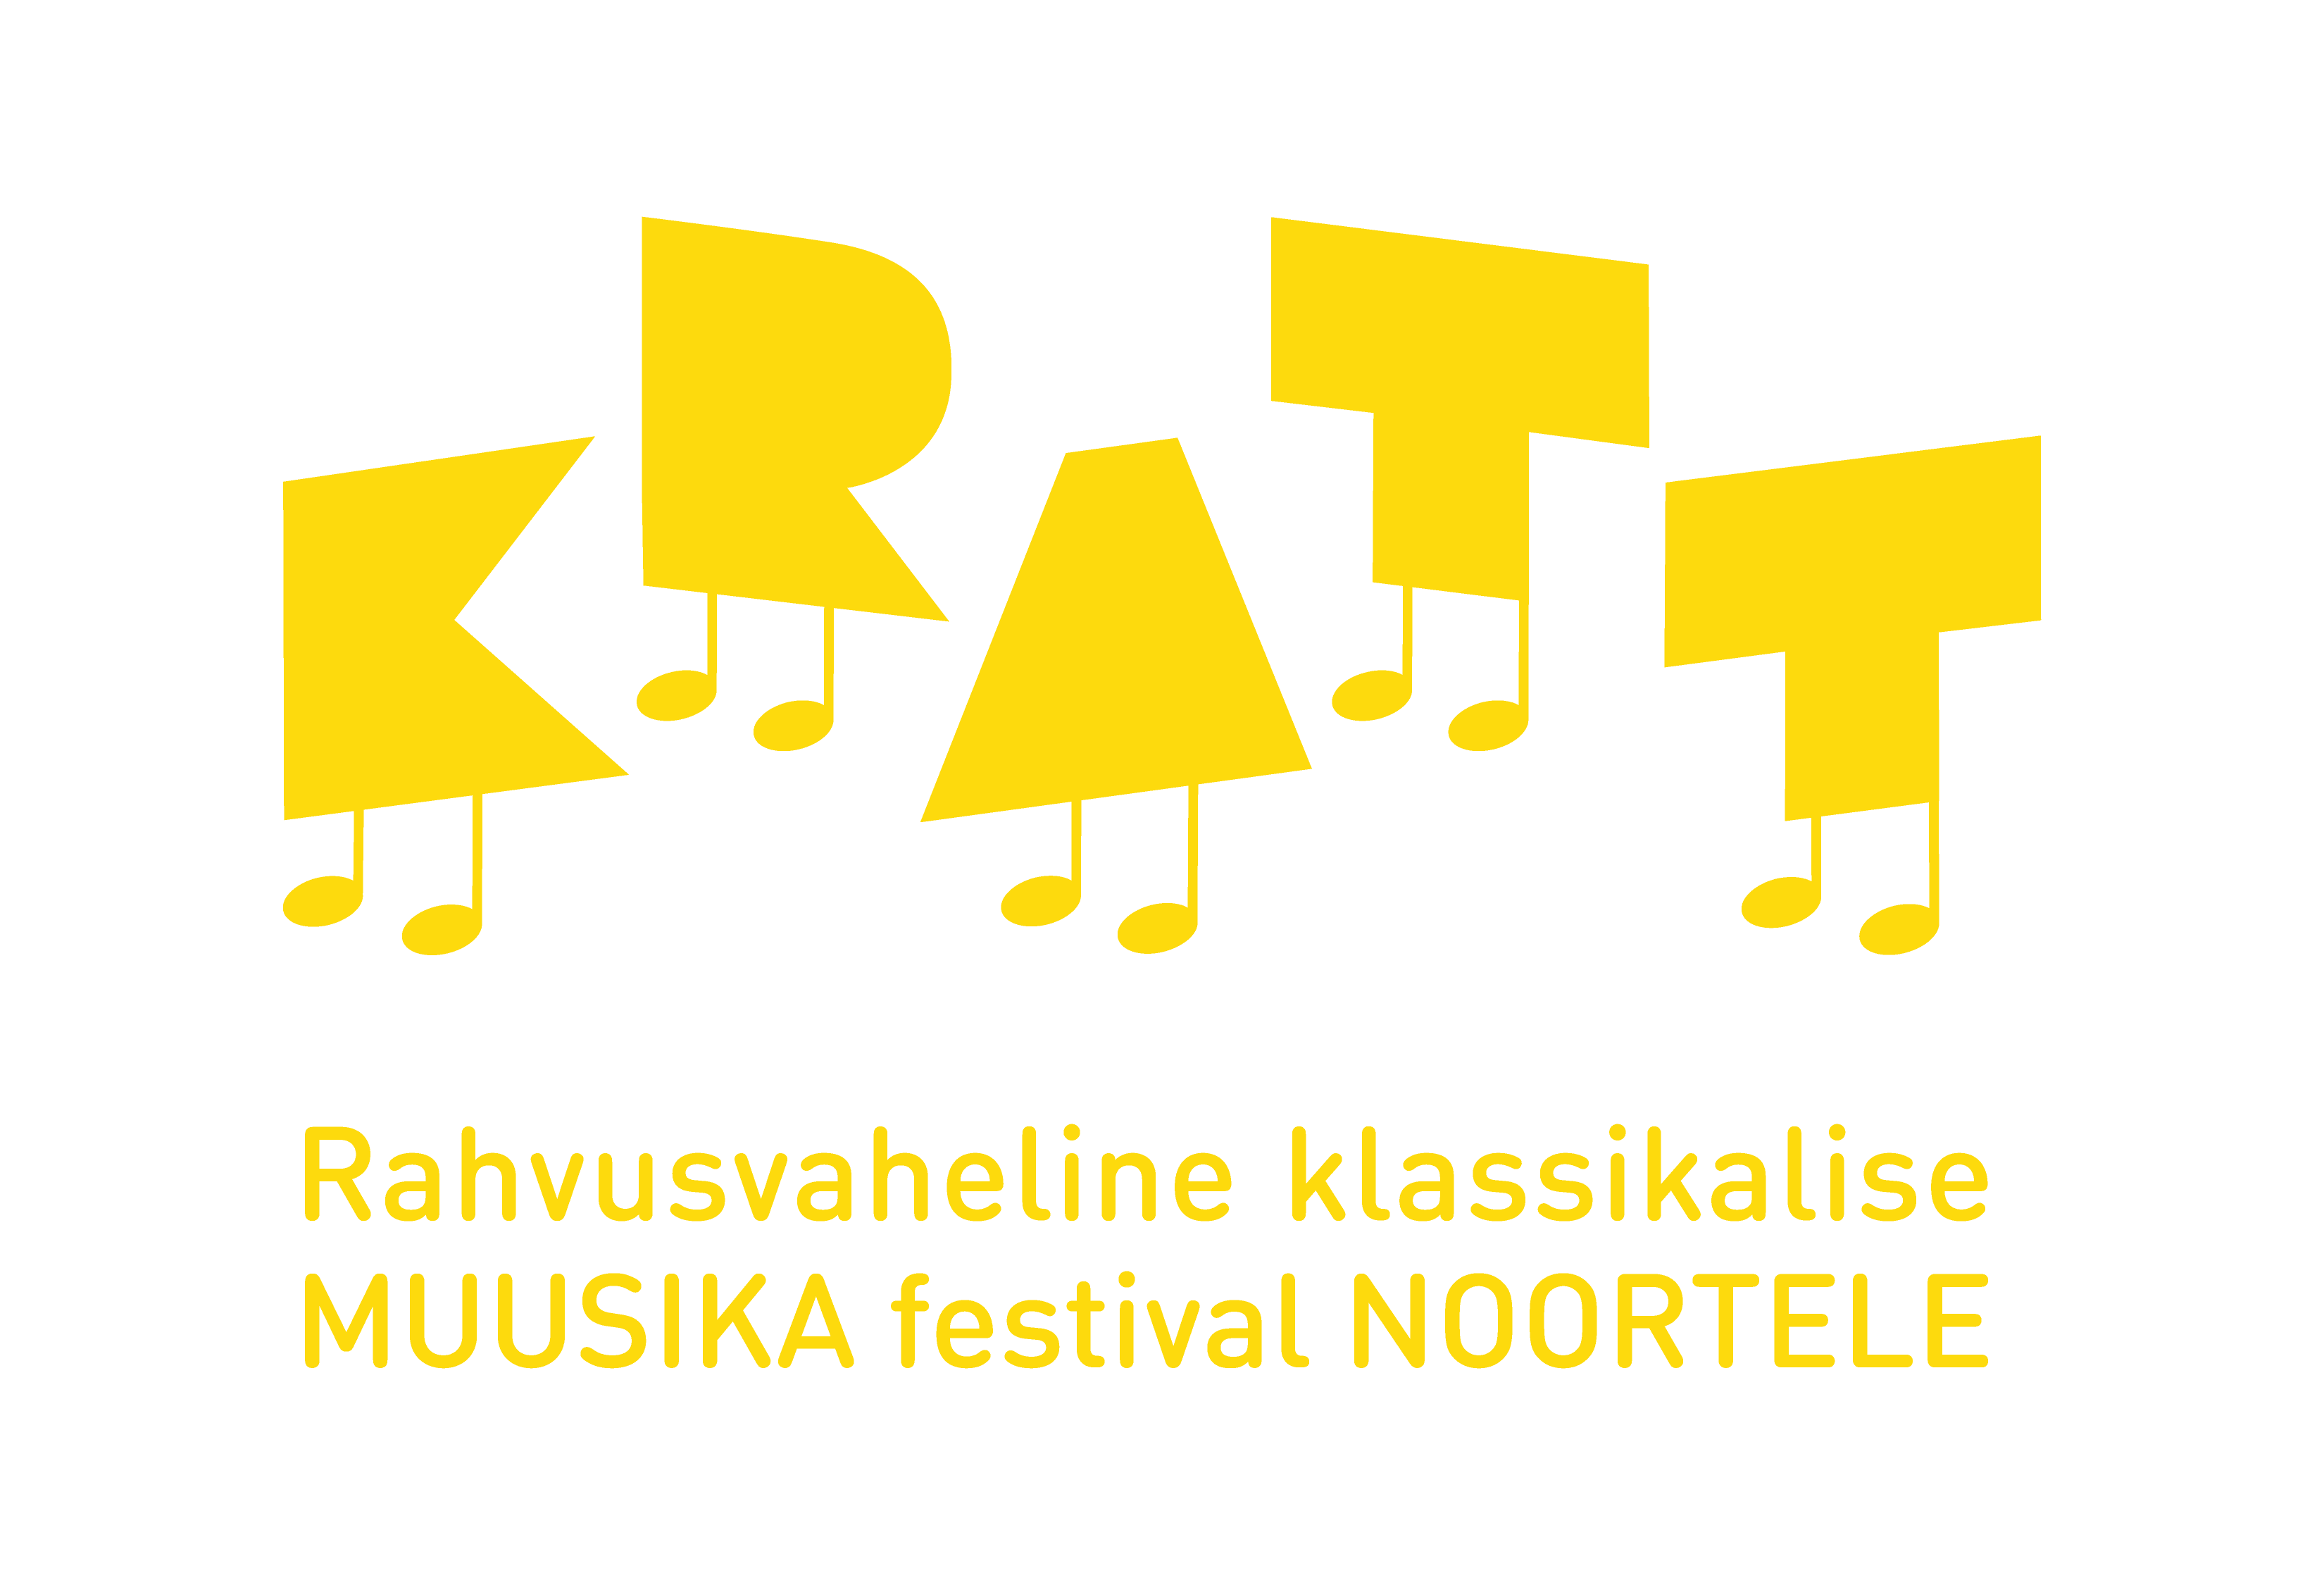 KRATT Logo